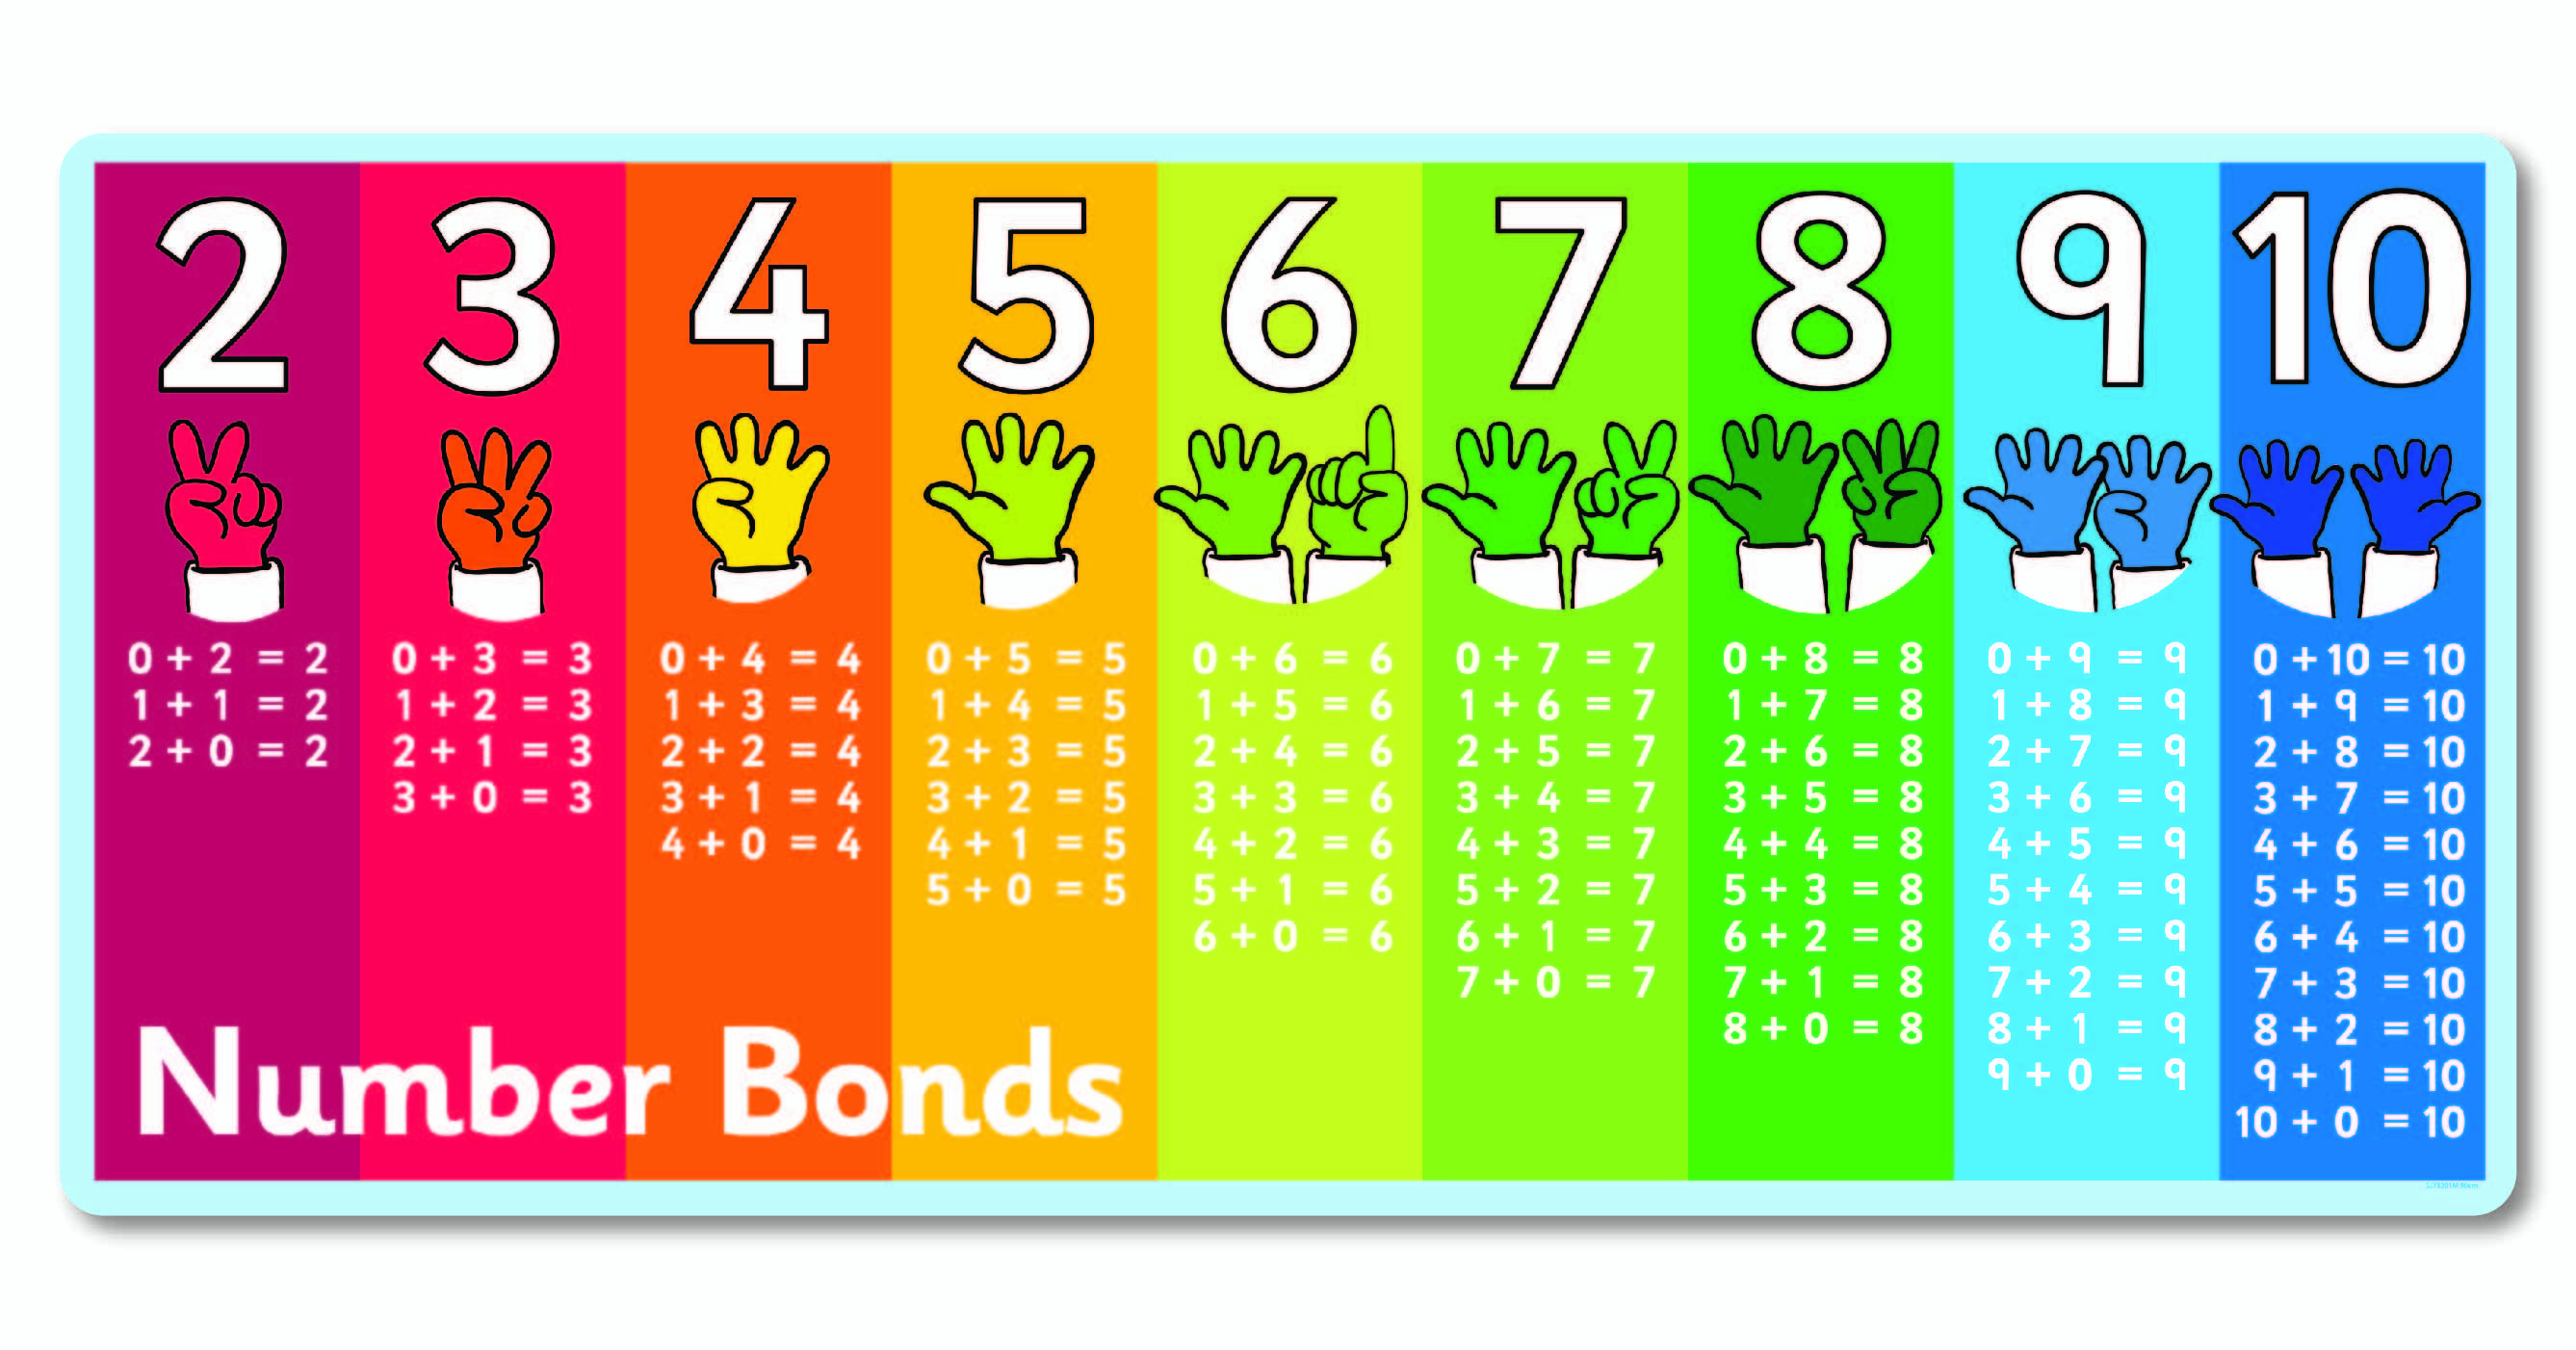 Number Bonds To Make 5